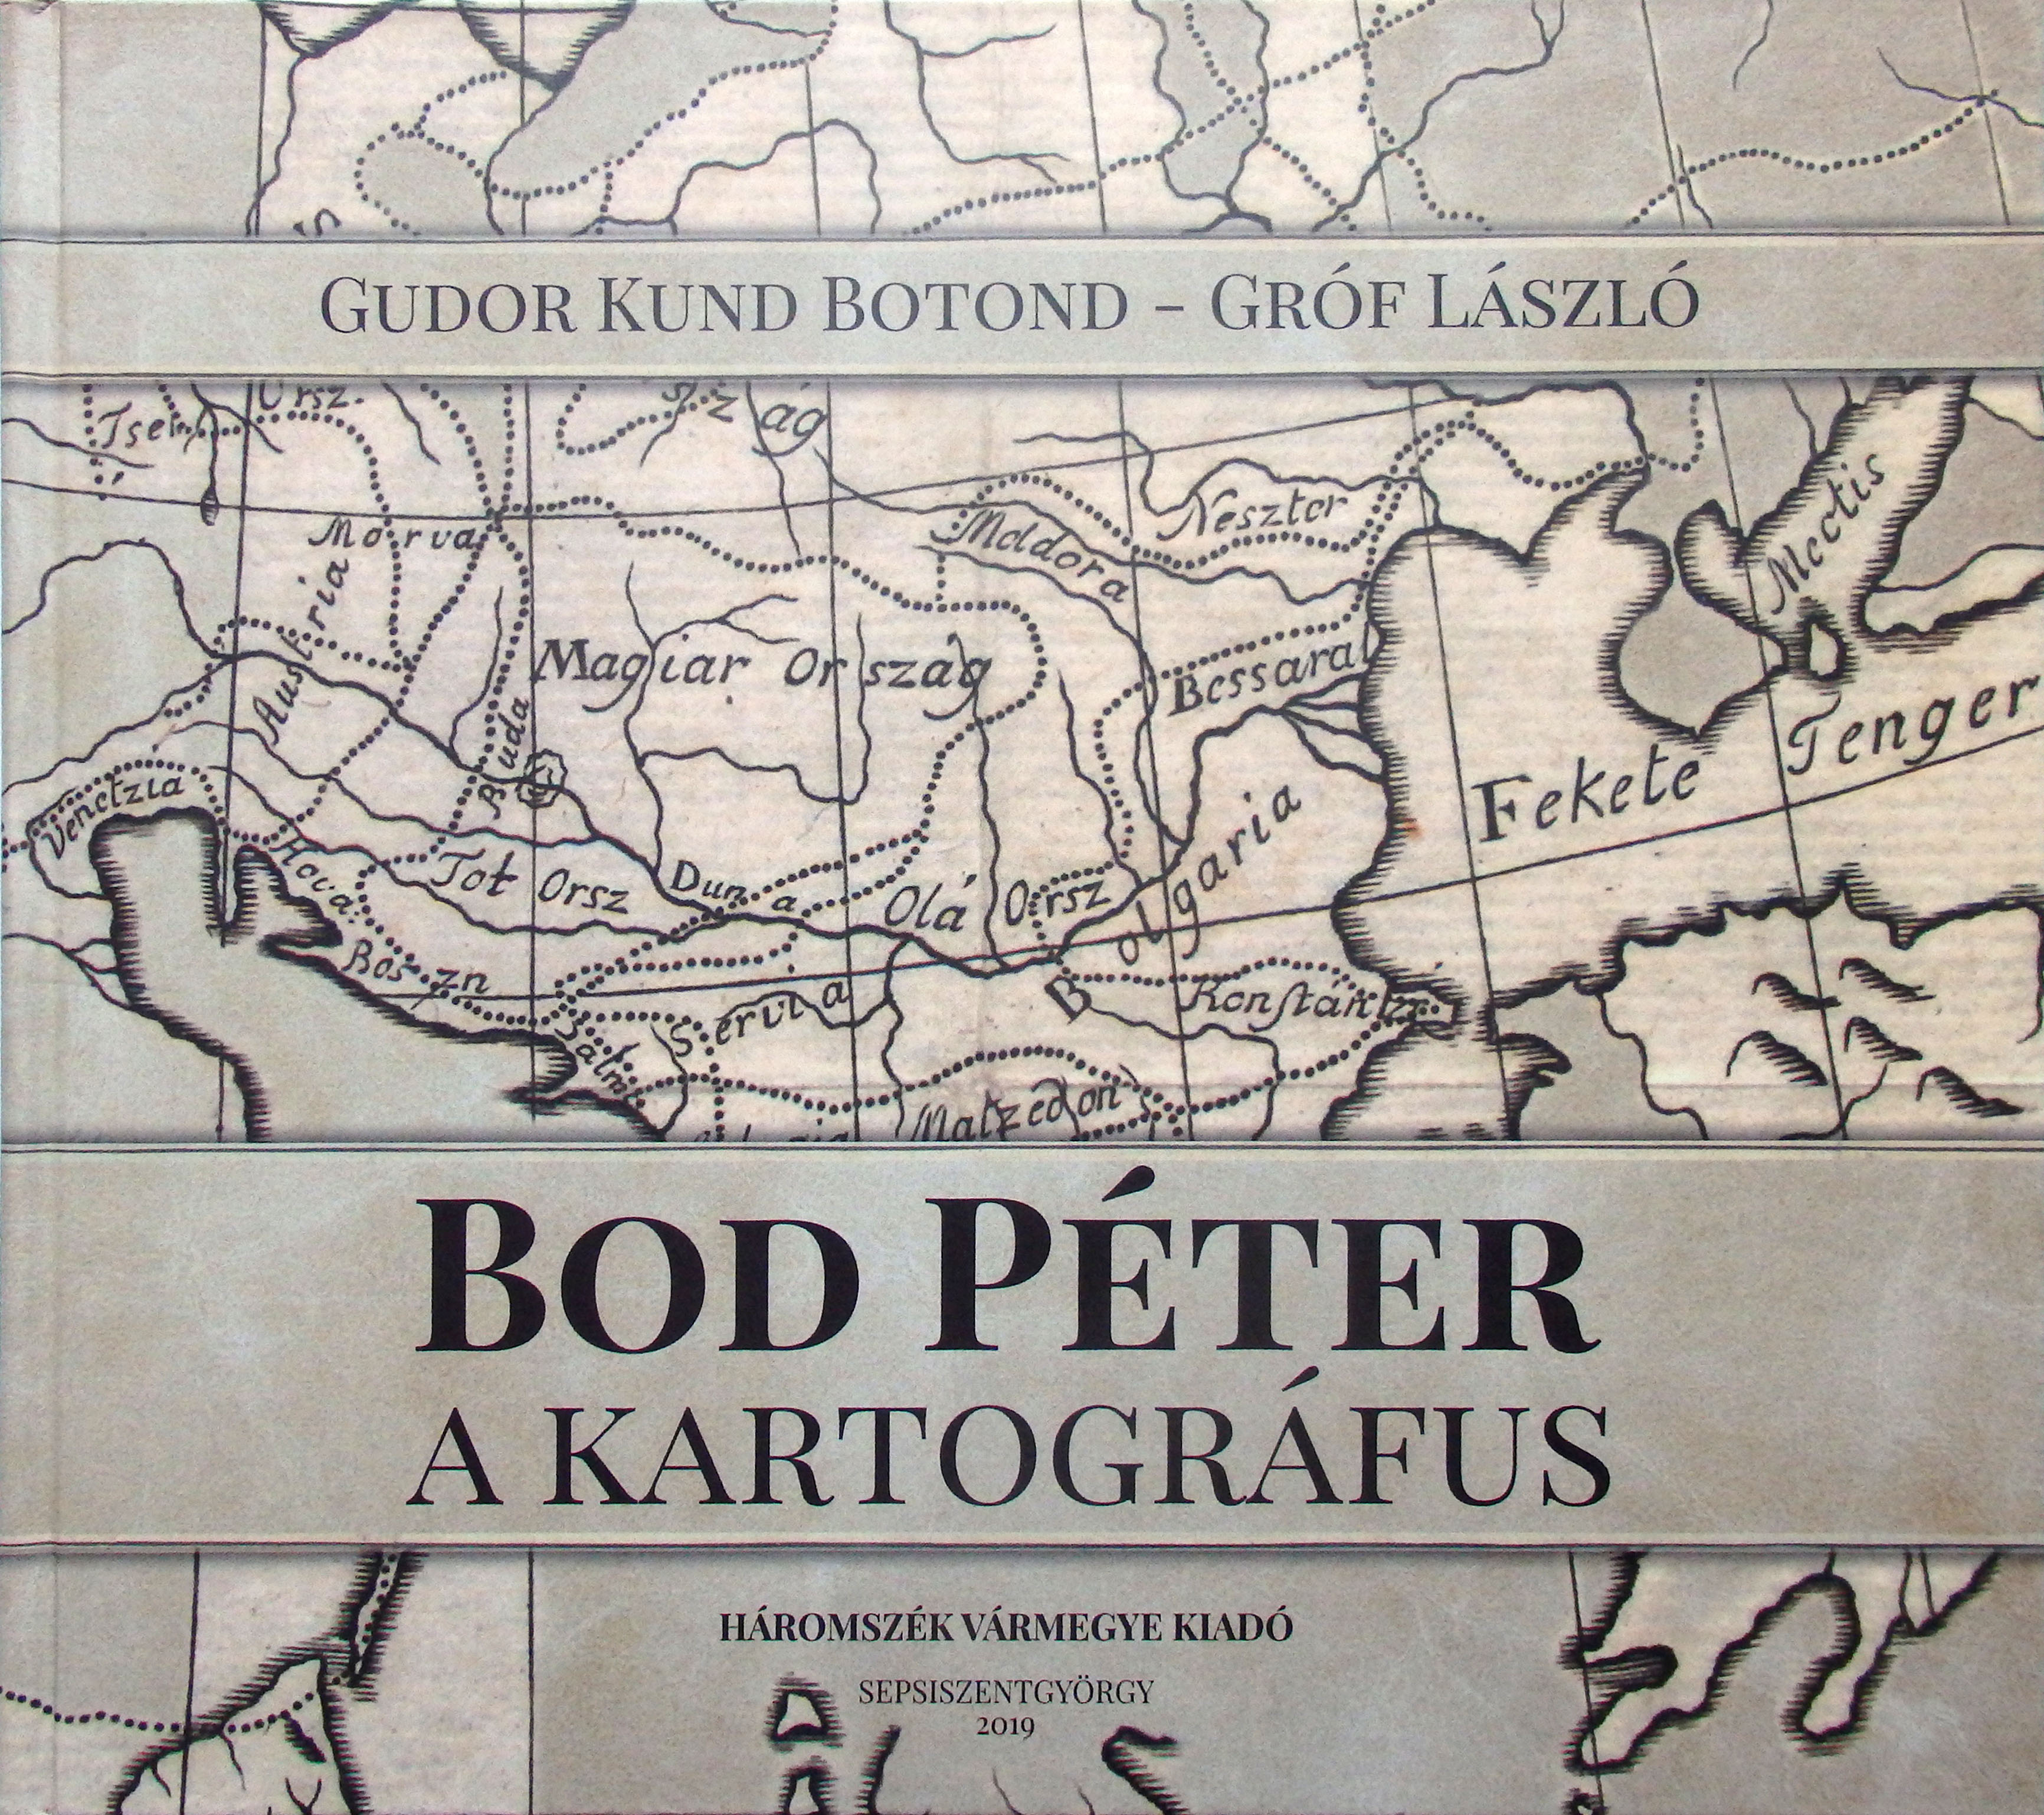 Gudor Kun Botond – Gróf László: Bod Péter a kartográfus (OSZK Törzsgyűjtemény, OC 113.376)